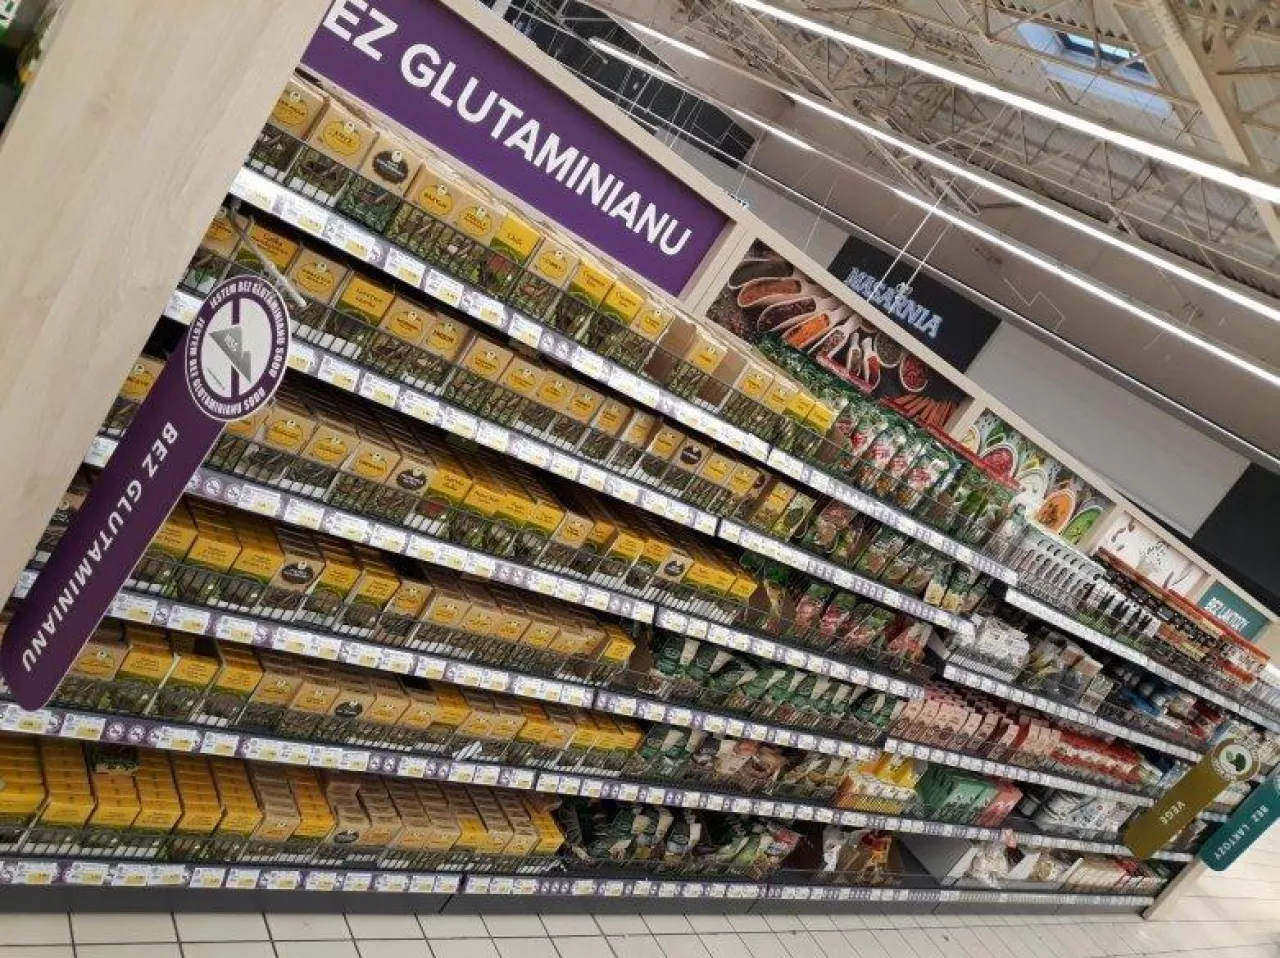 Strefa ze zdrową żywnością w hipermarkecie E.Leclerc w Rzeszowie (materiały prasowe)